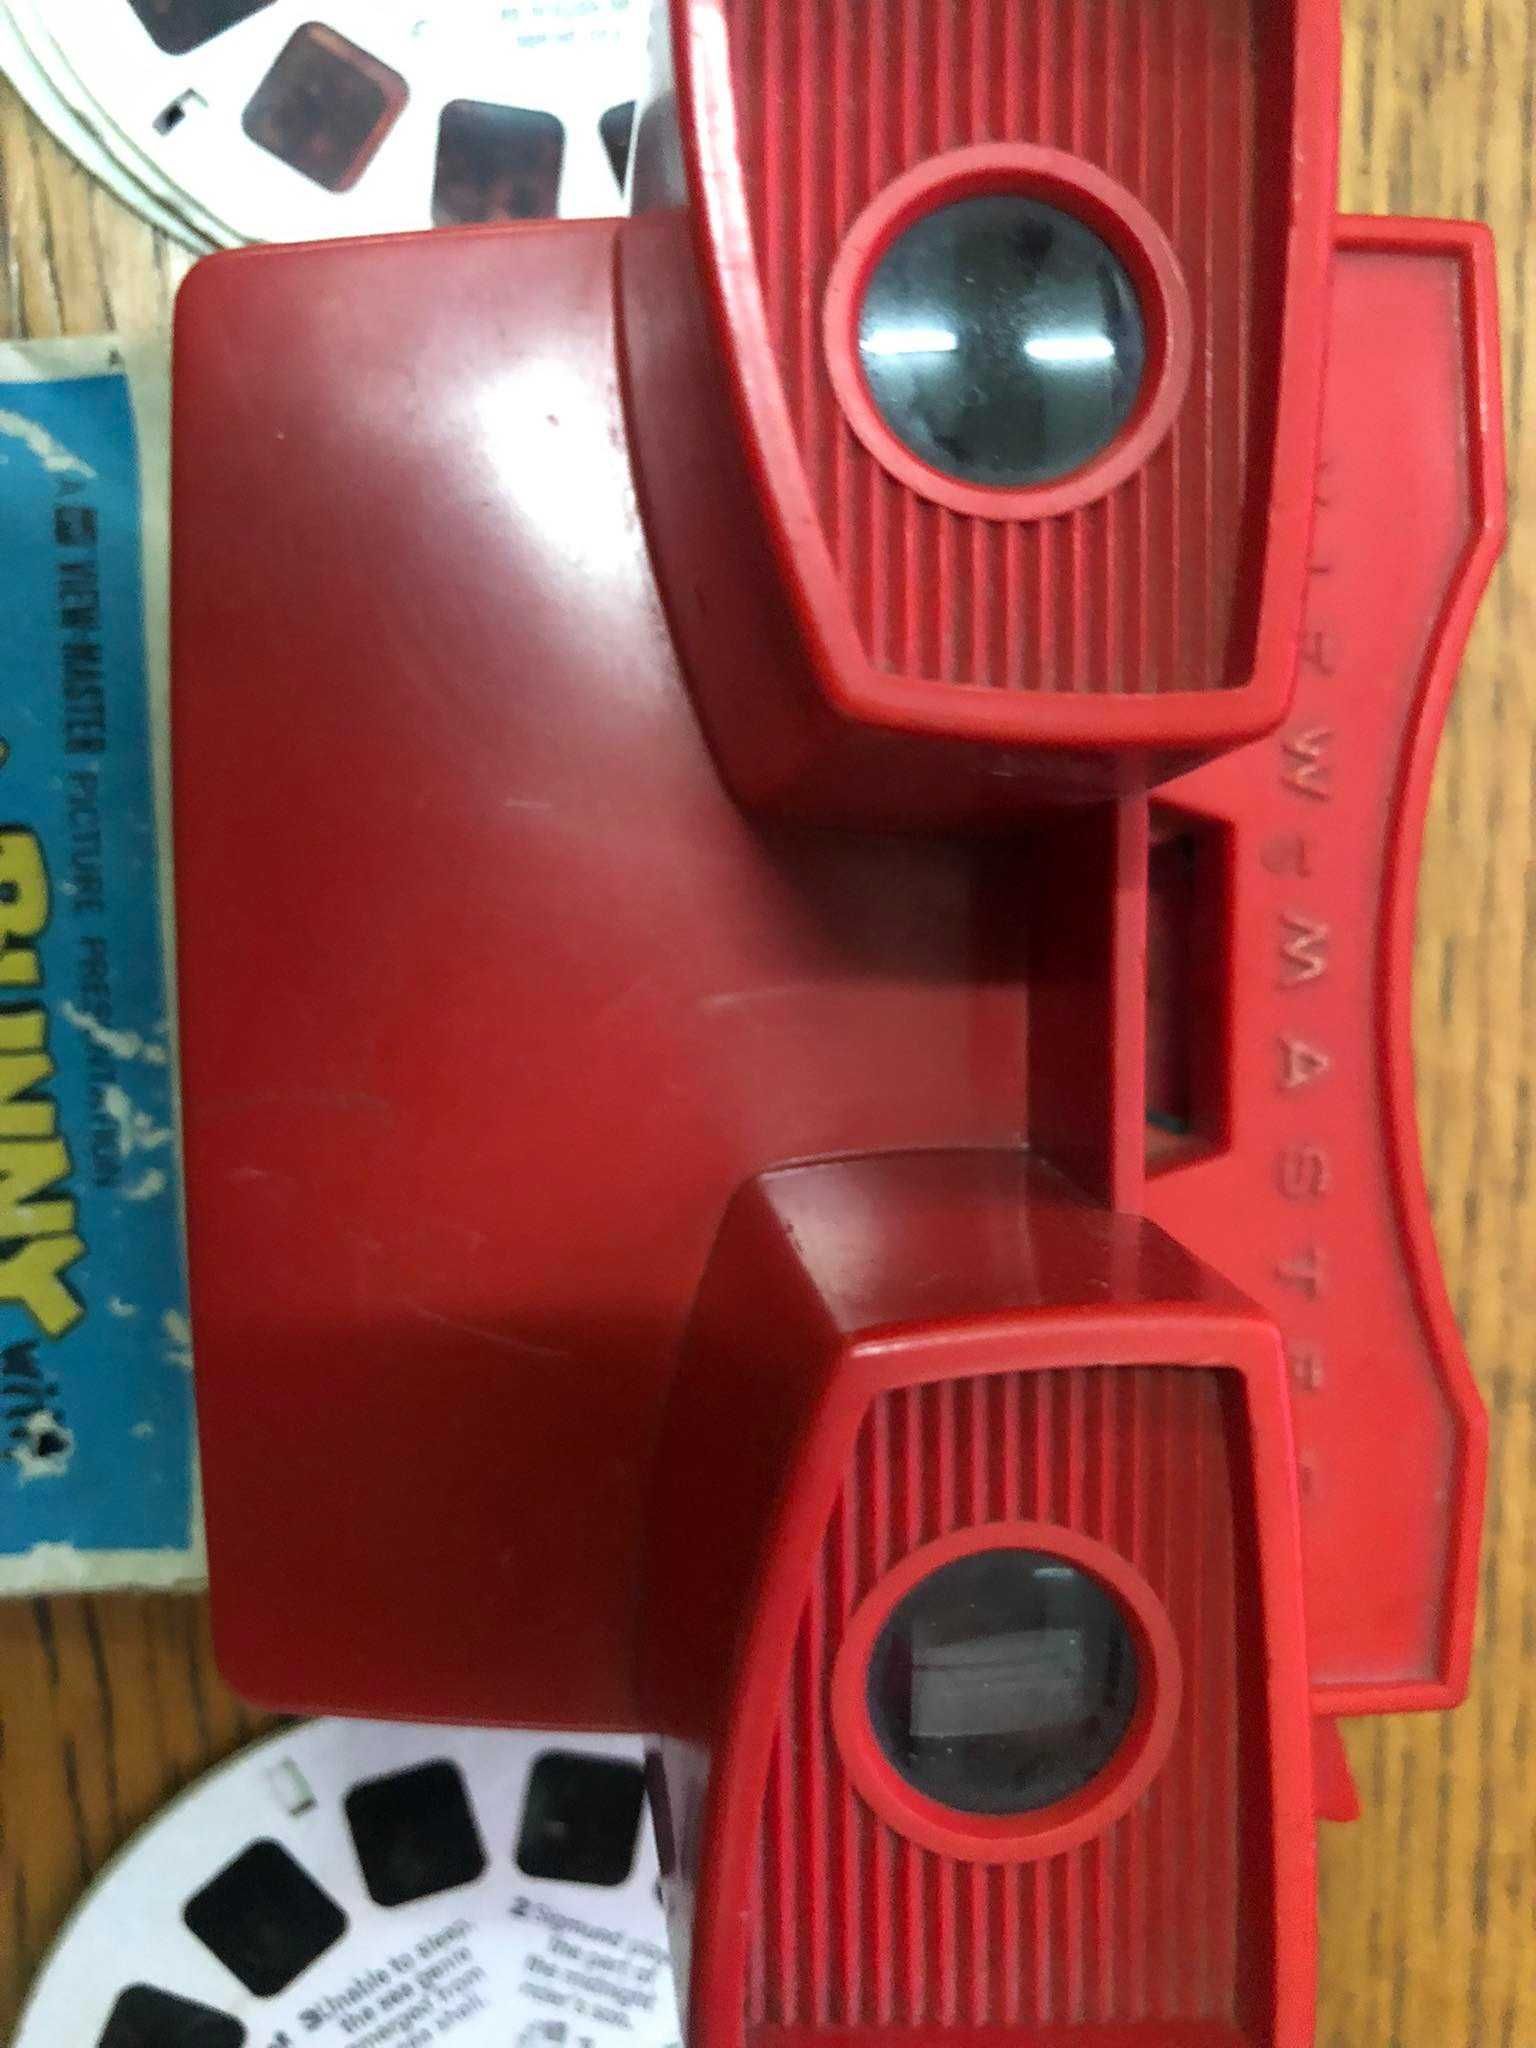 View master vermelho Modelo G 1959 a 1977+ 8 discos